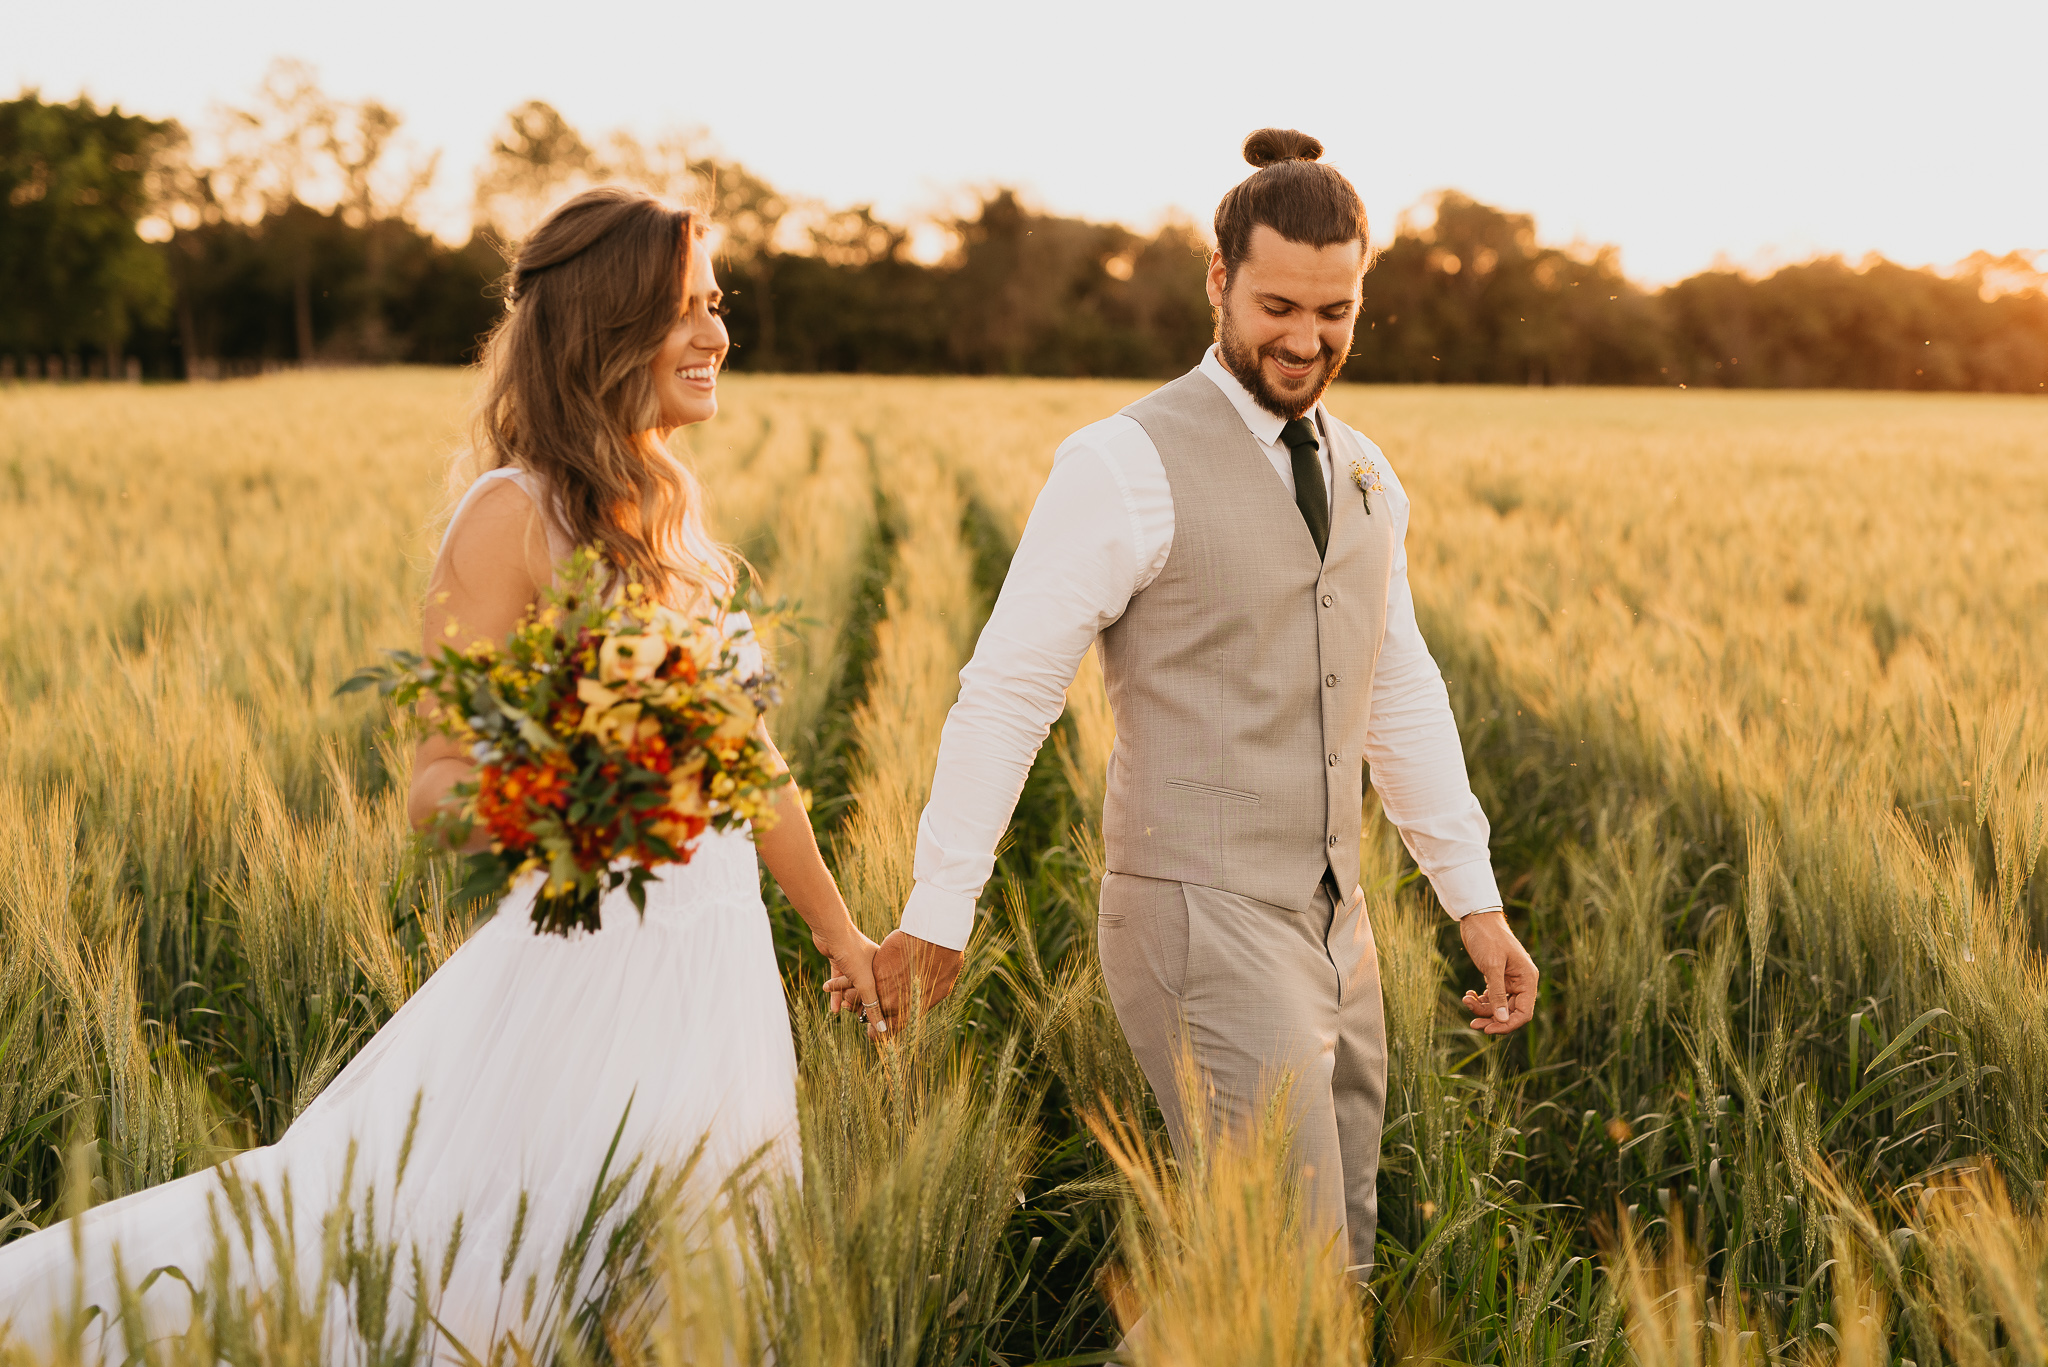 Santo Casamenteiro: Uma assessoria de casamento good vibes!